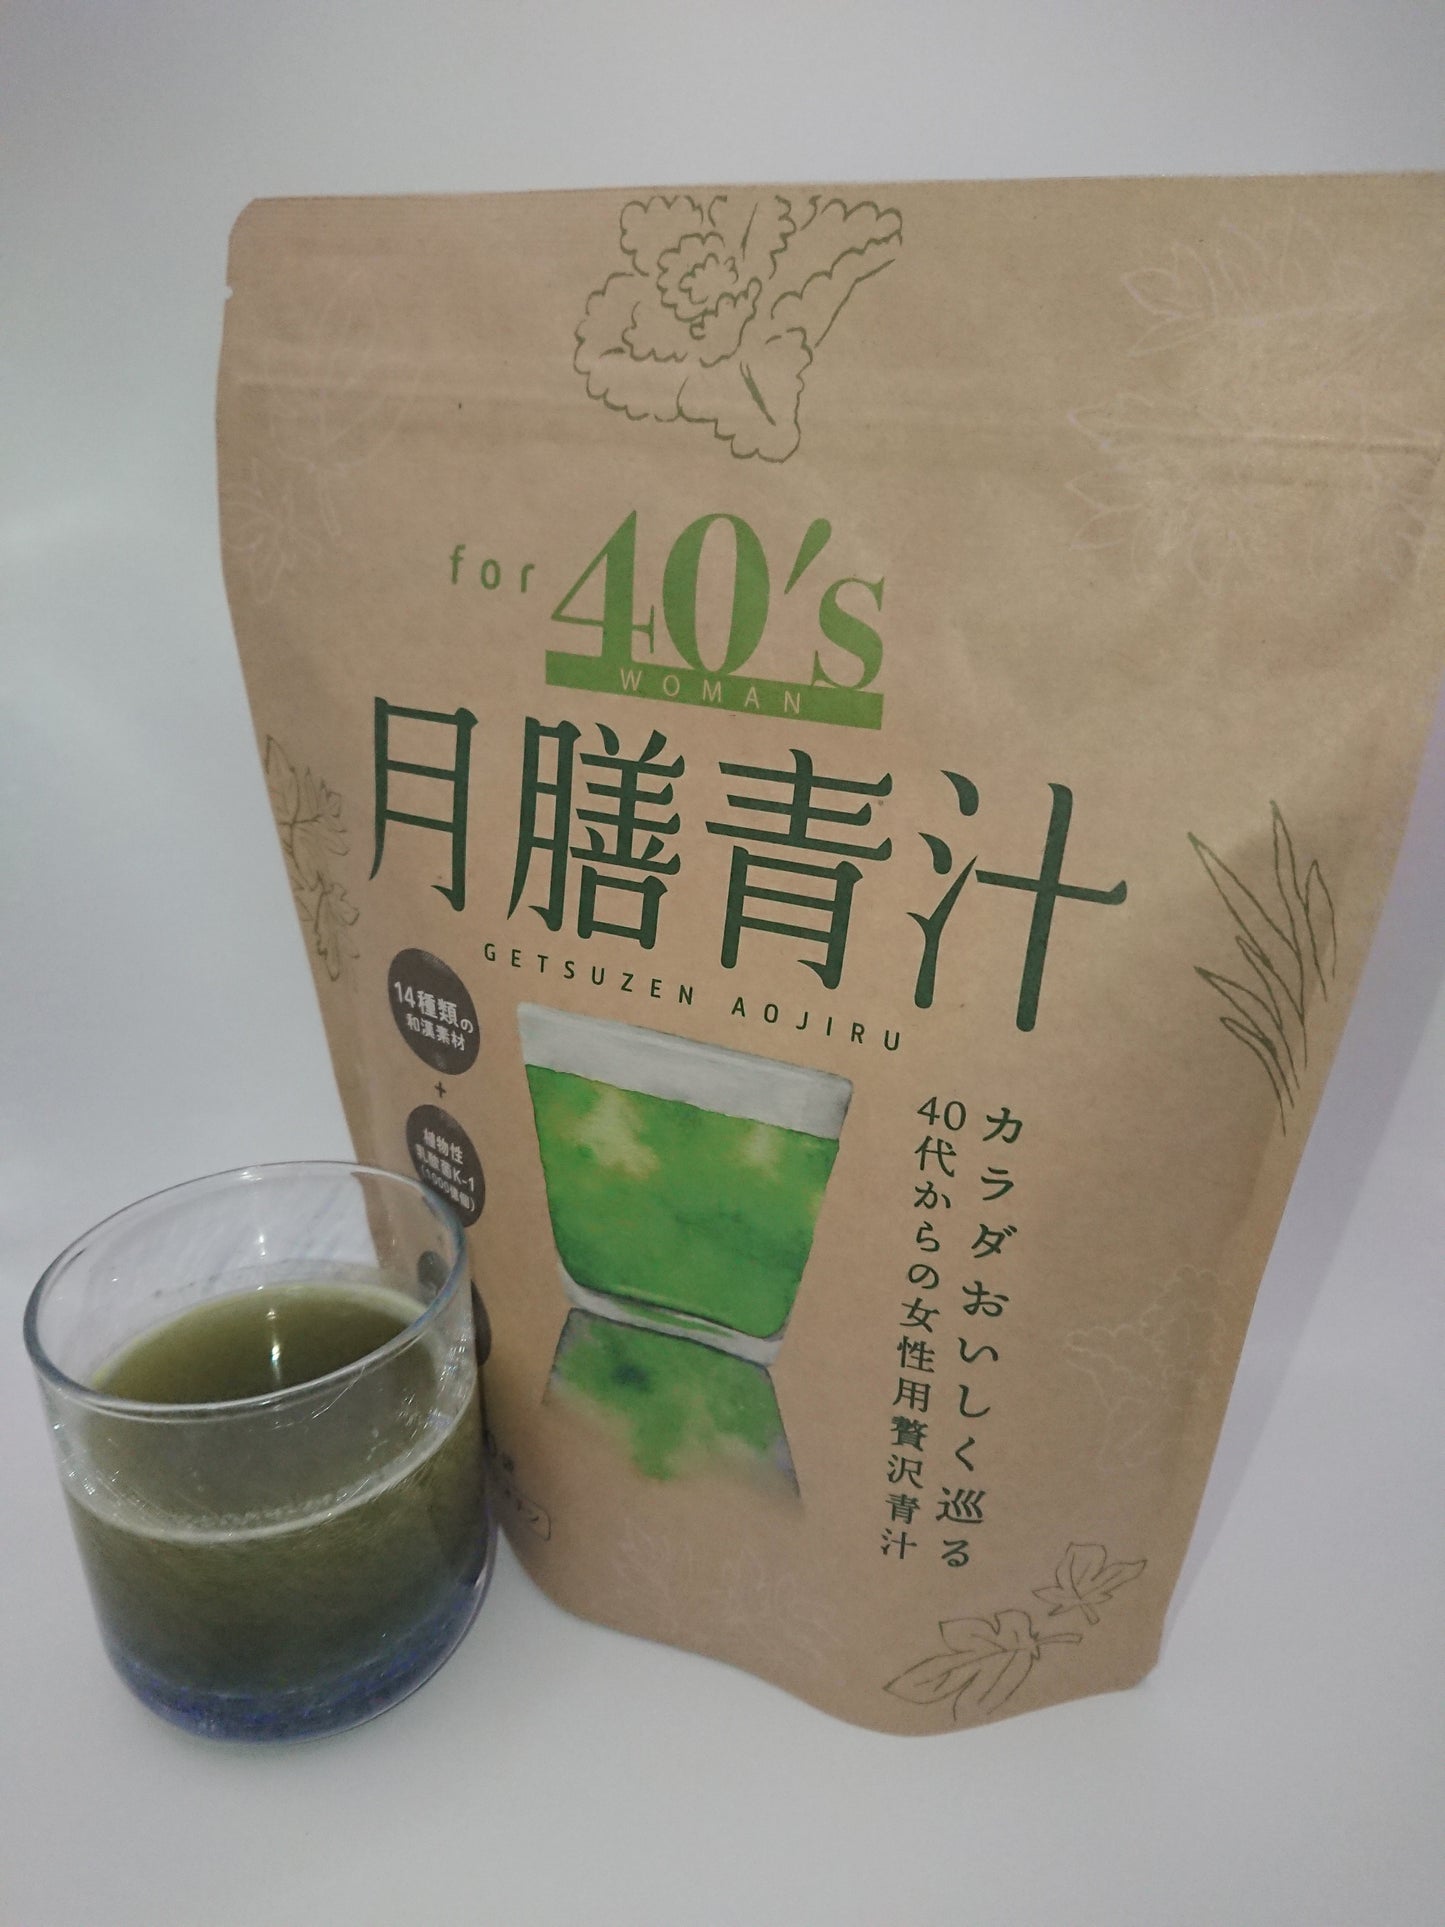 月膳青汁 for 40's WOMAN